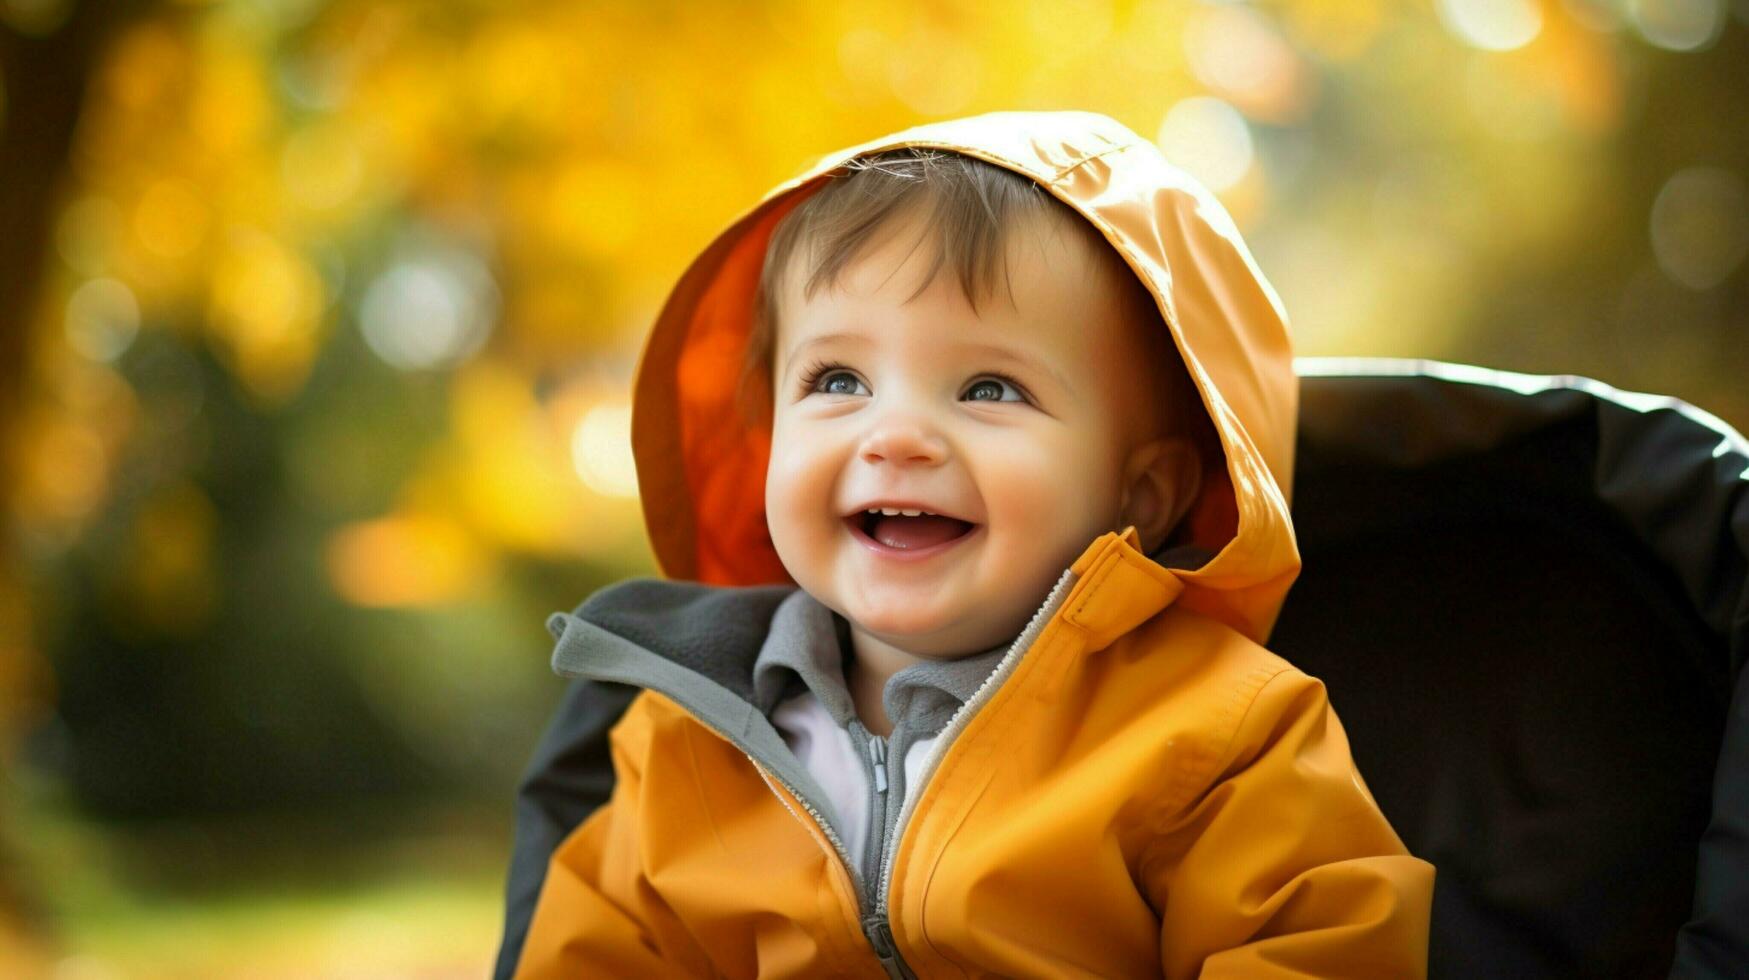 söt bebis pojke spelar utomhus leende med oskuld foto